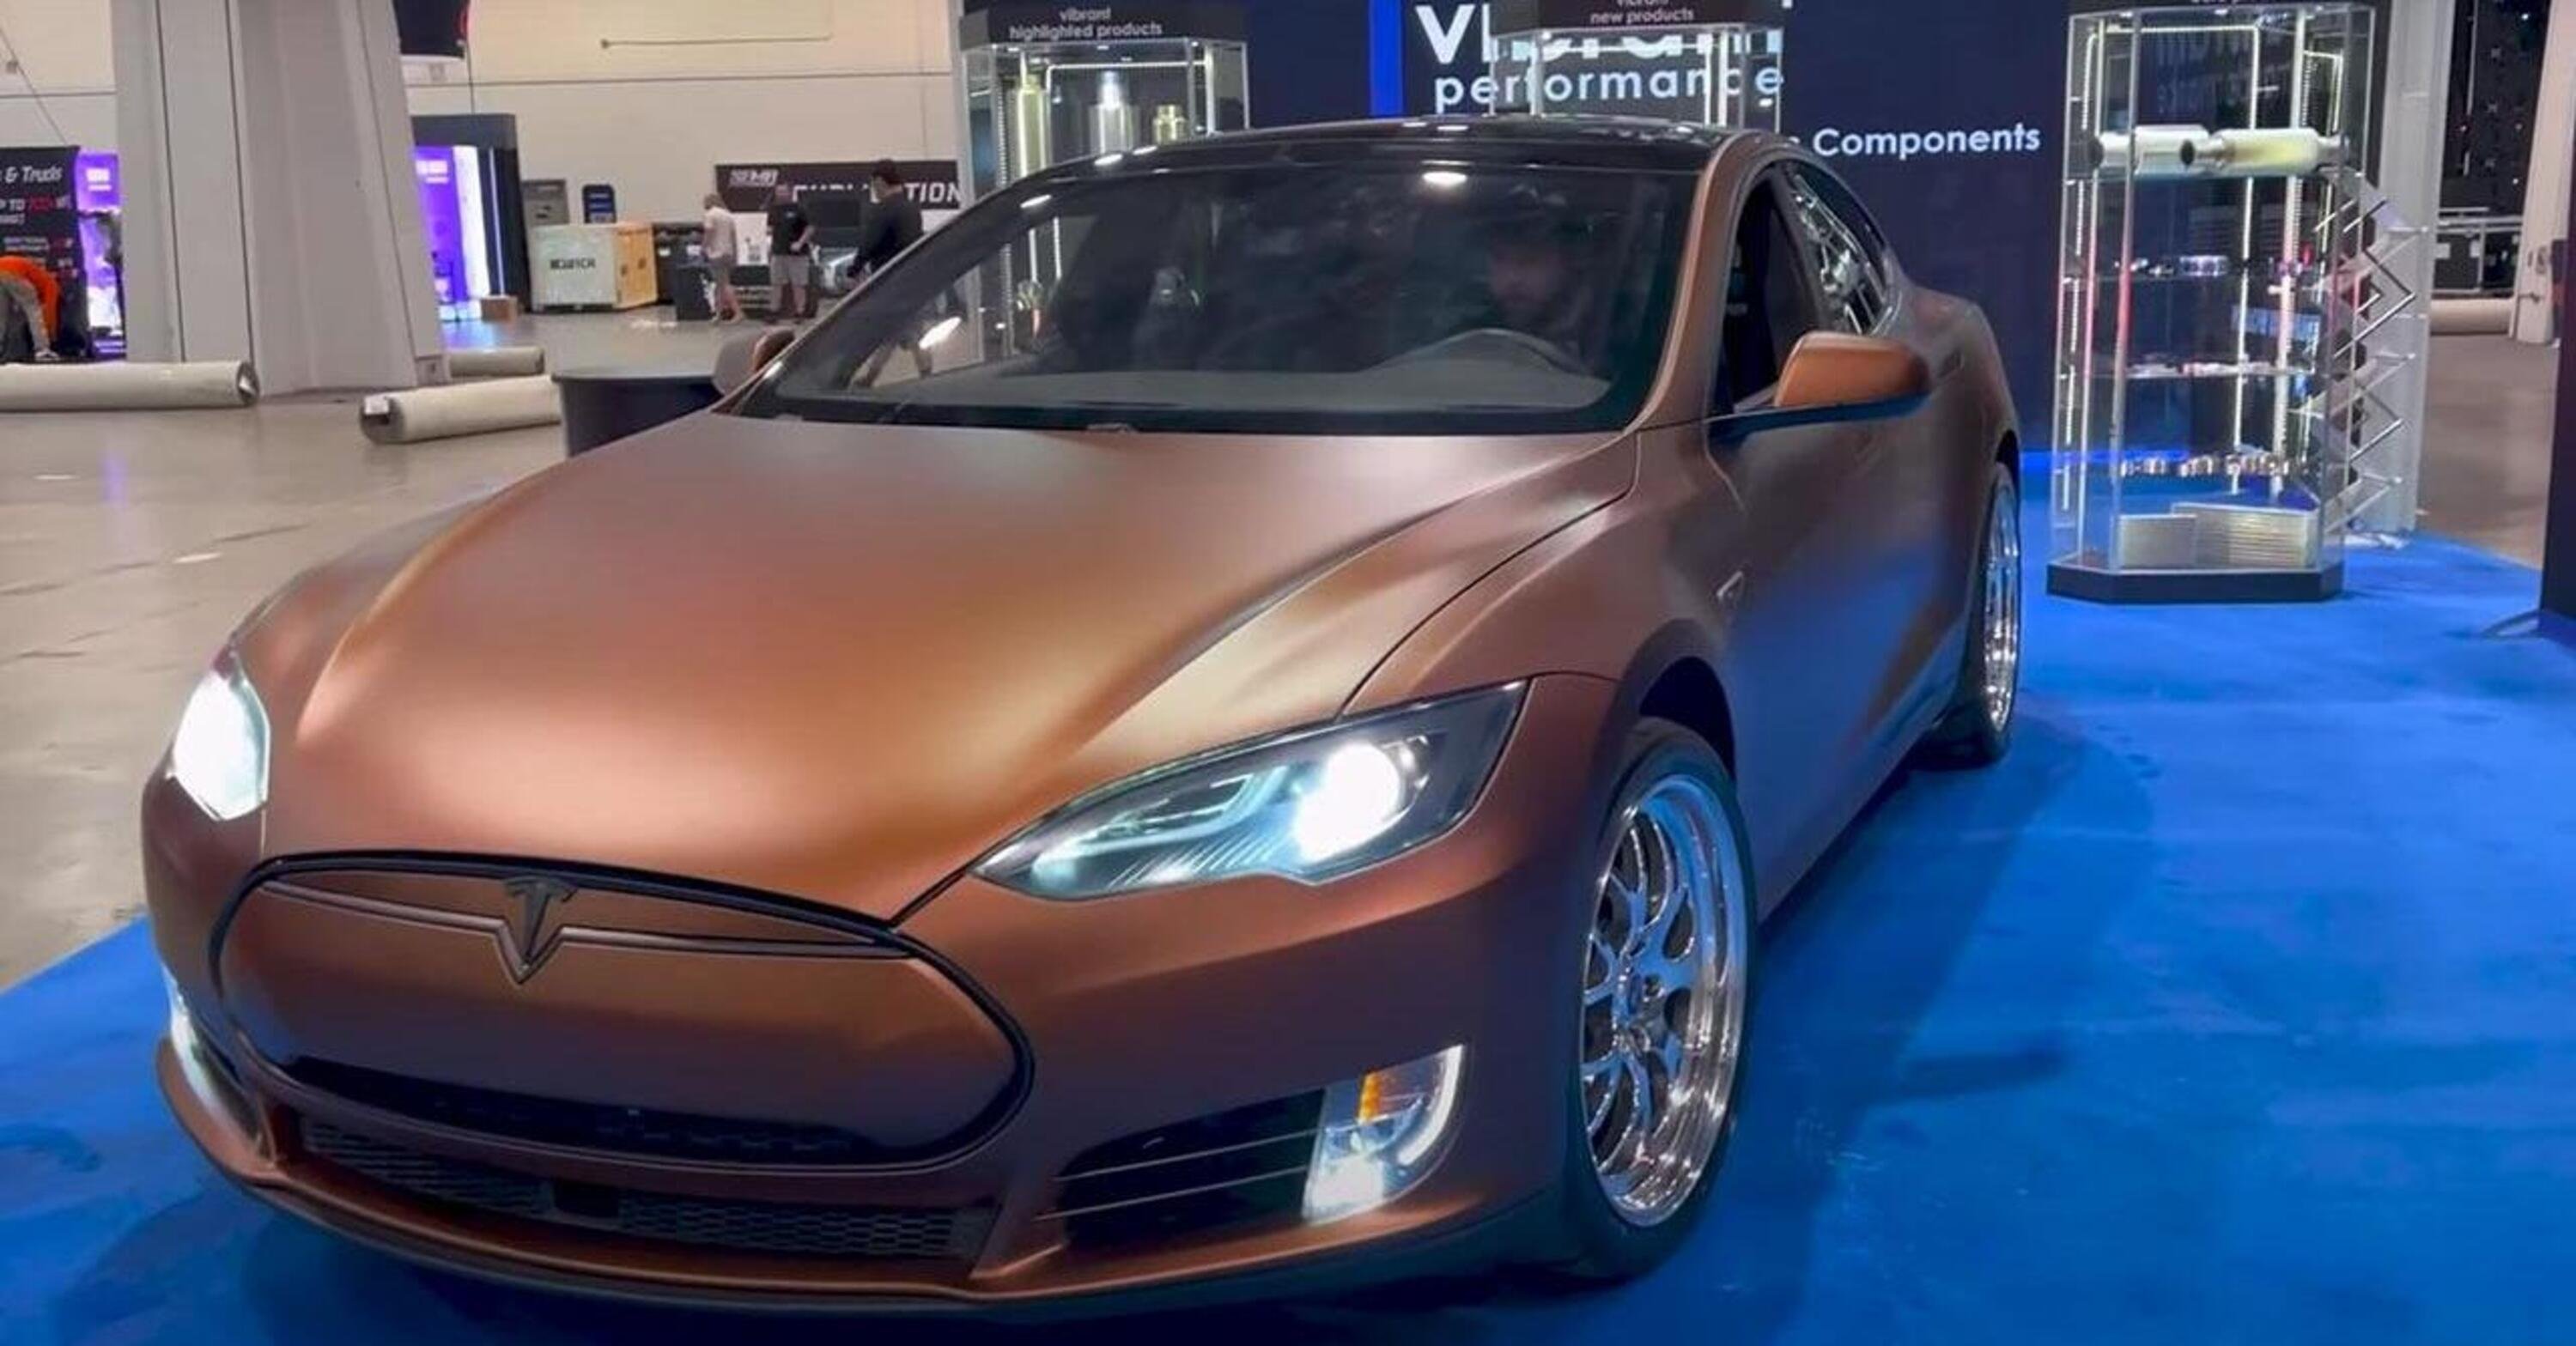 Come ti raggiro Greta Thunberg: ecco la Tesla Model S con un V8 Camaro sotto al cofano [VIDEO]